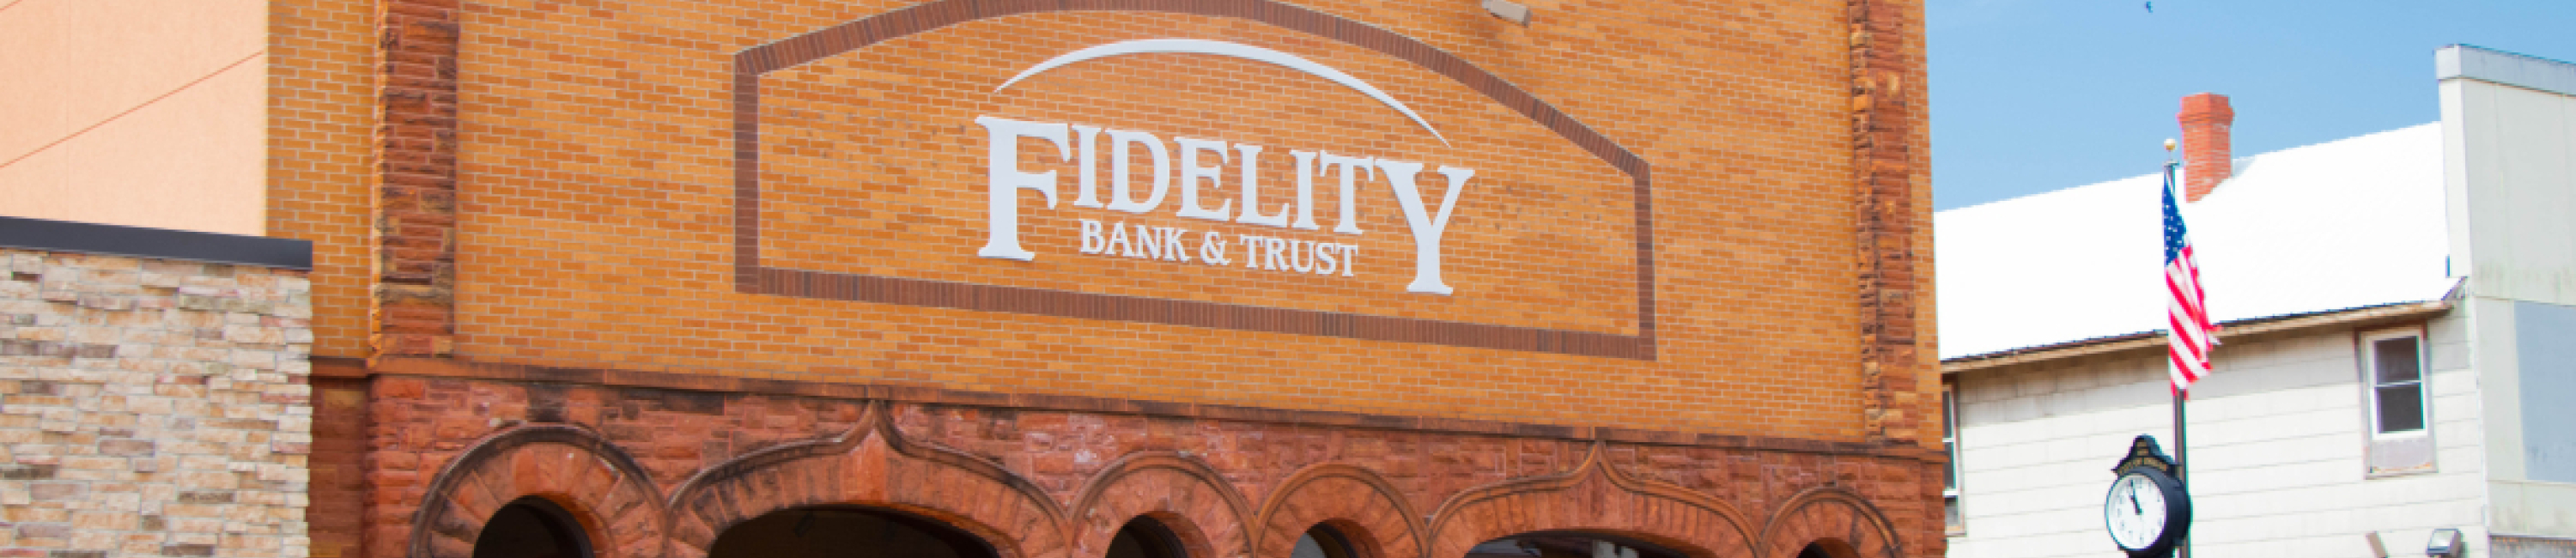 Ossian Branch of Fidelity Bank & Trust